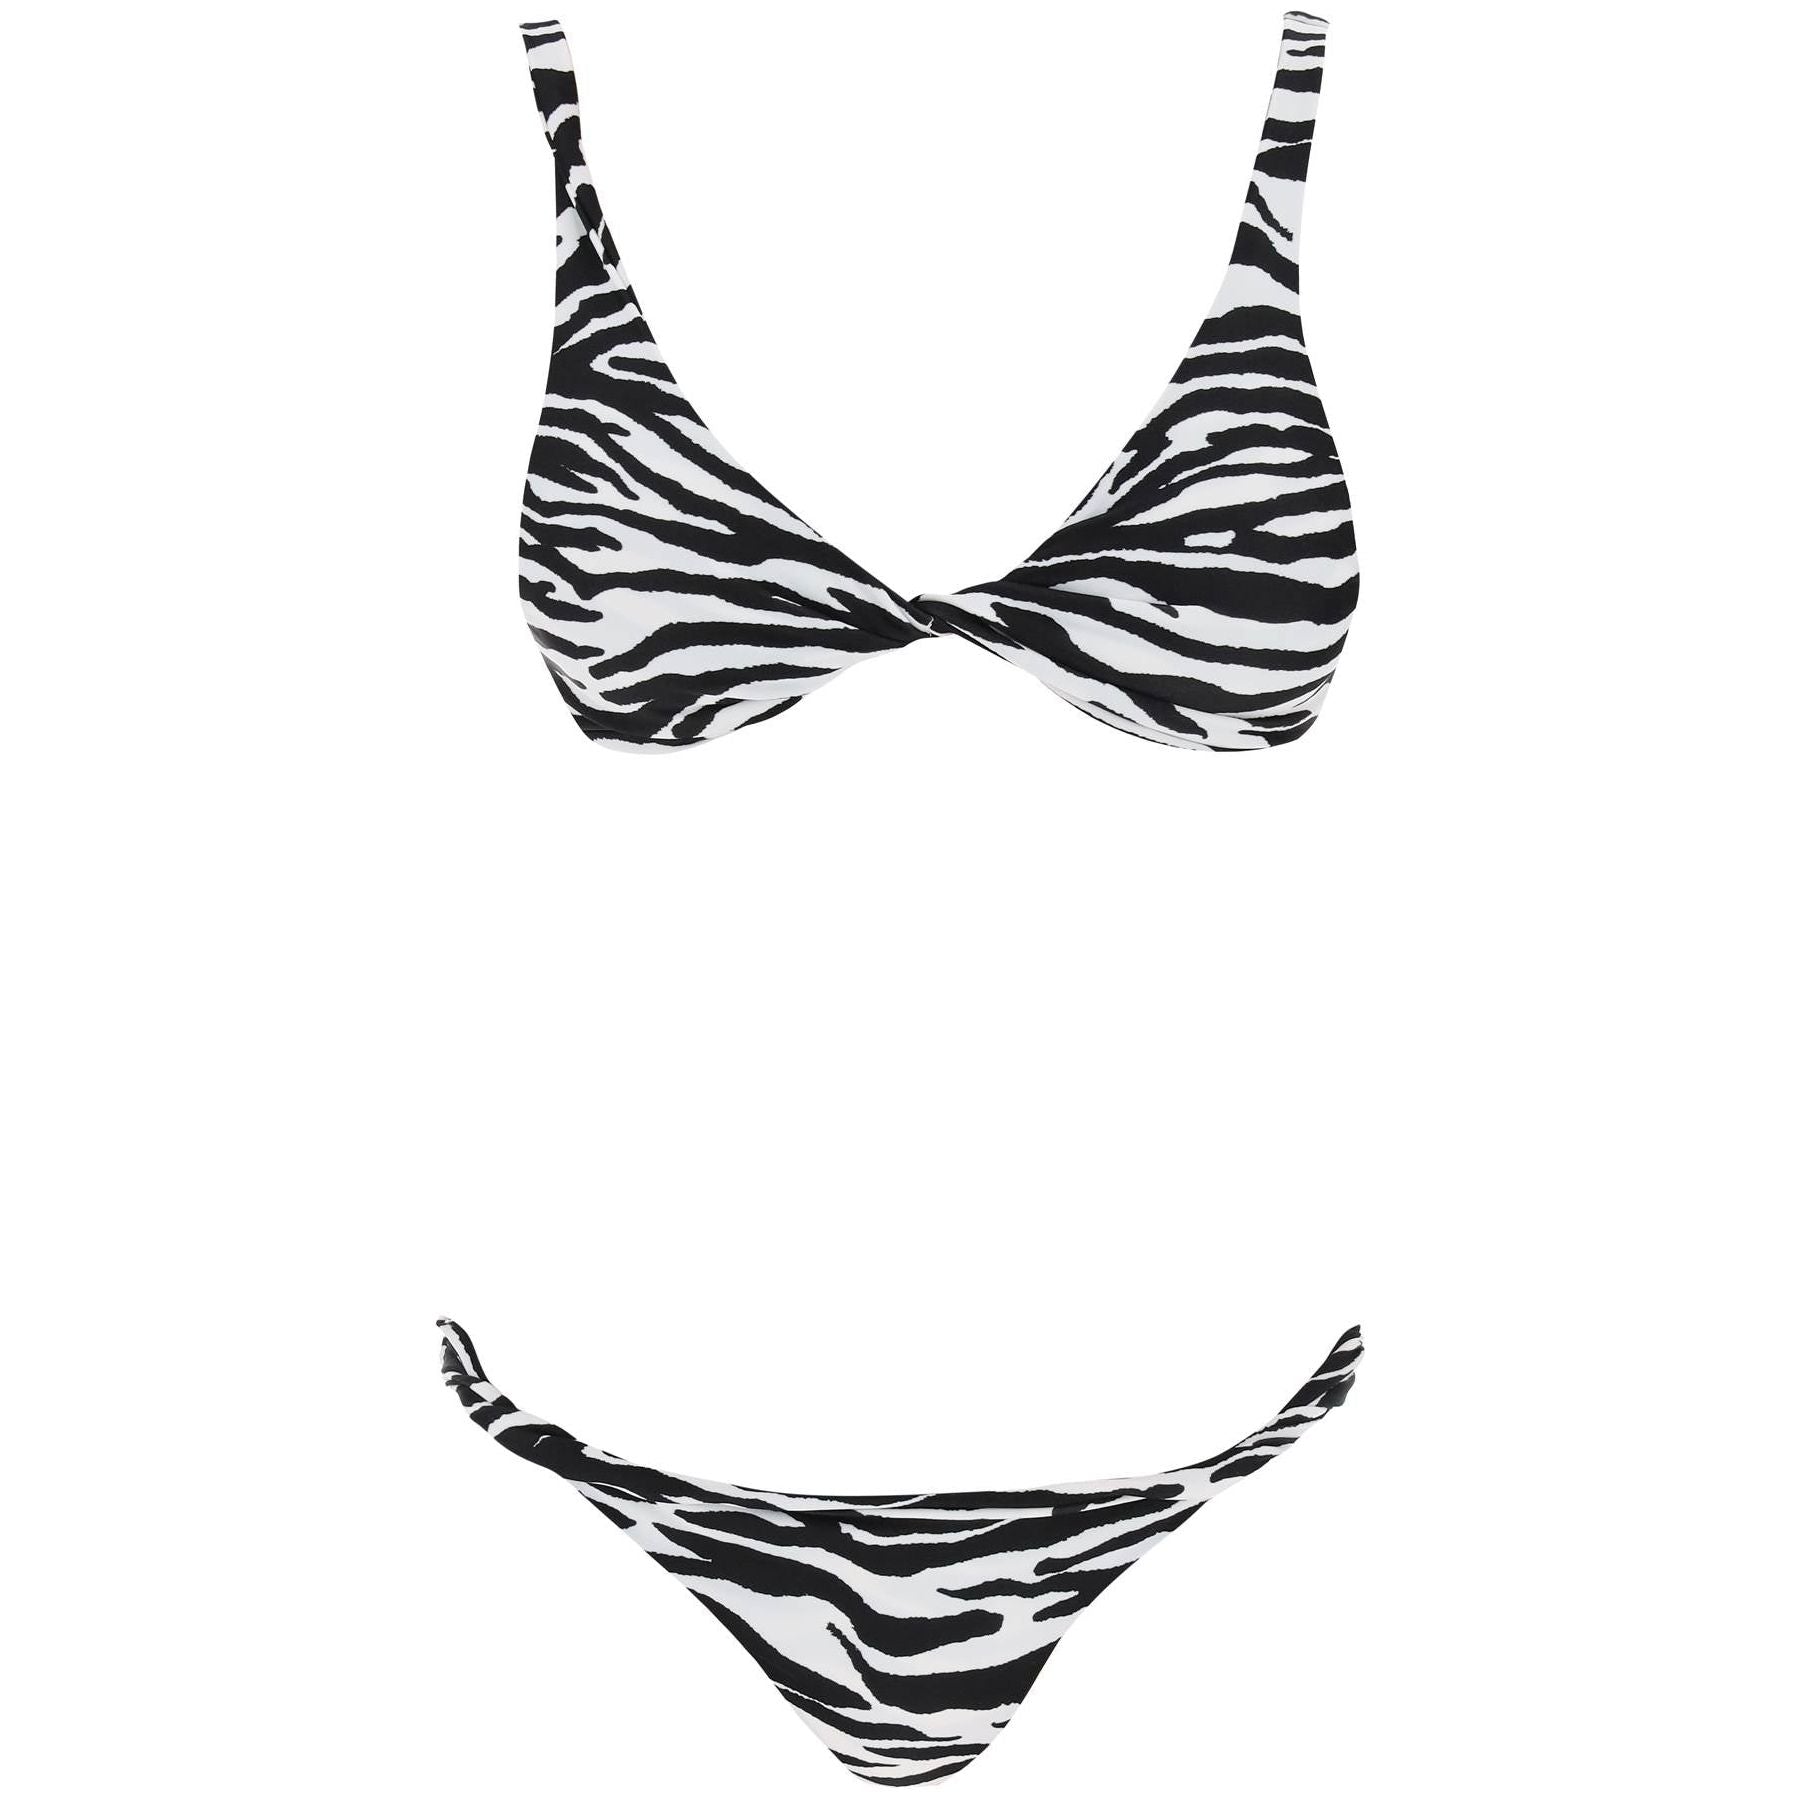 Zebra Printed Bikini Set